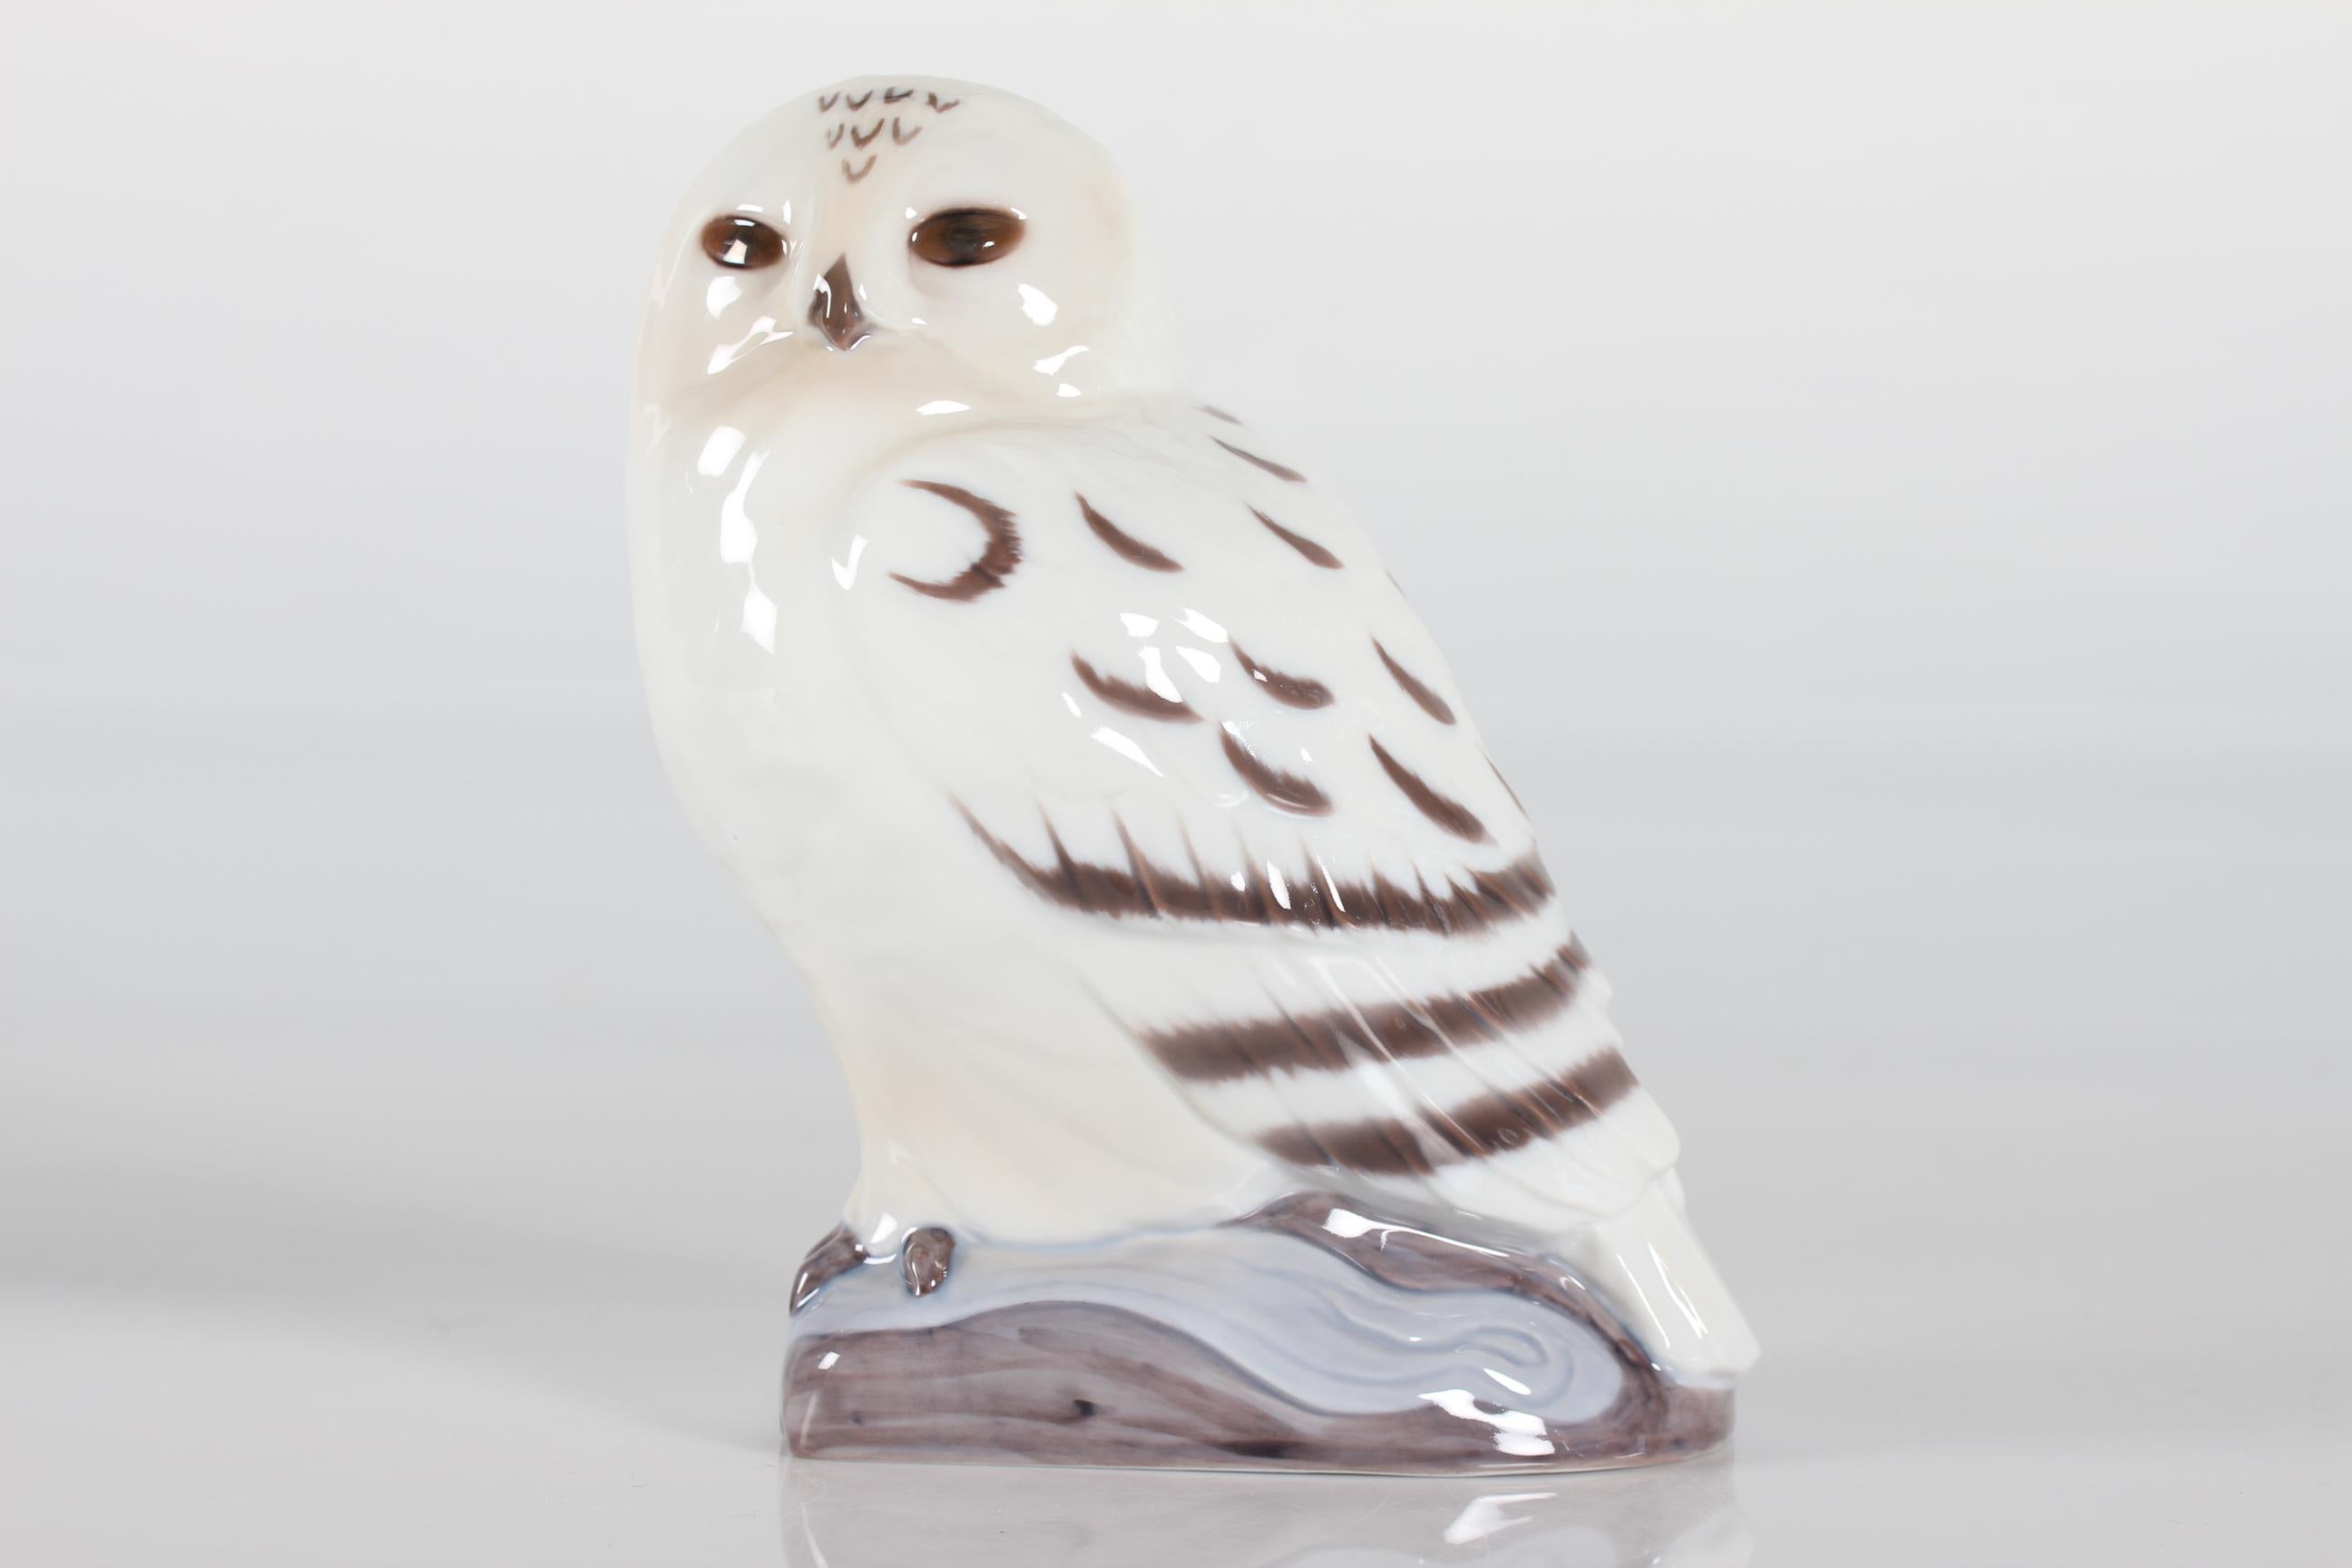 Vintage snow owl figure 2475 by Bing & Grøndahl later Royal Copenhagen in Denmark.
Il est réalisé en porcelaine avec une glaçure blanche et brune par l'artiste danois K. Otto dans les années 1970.